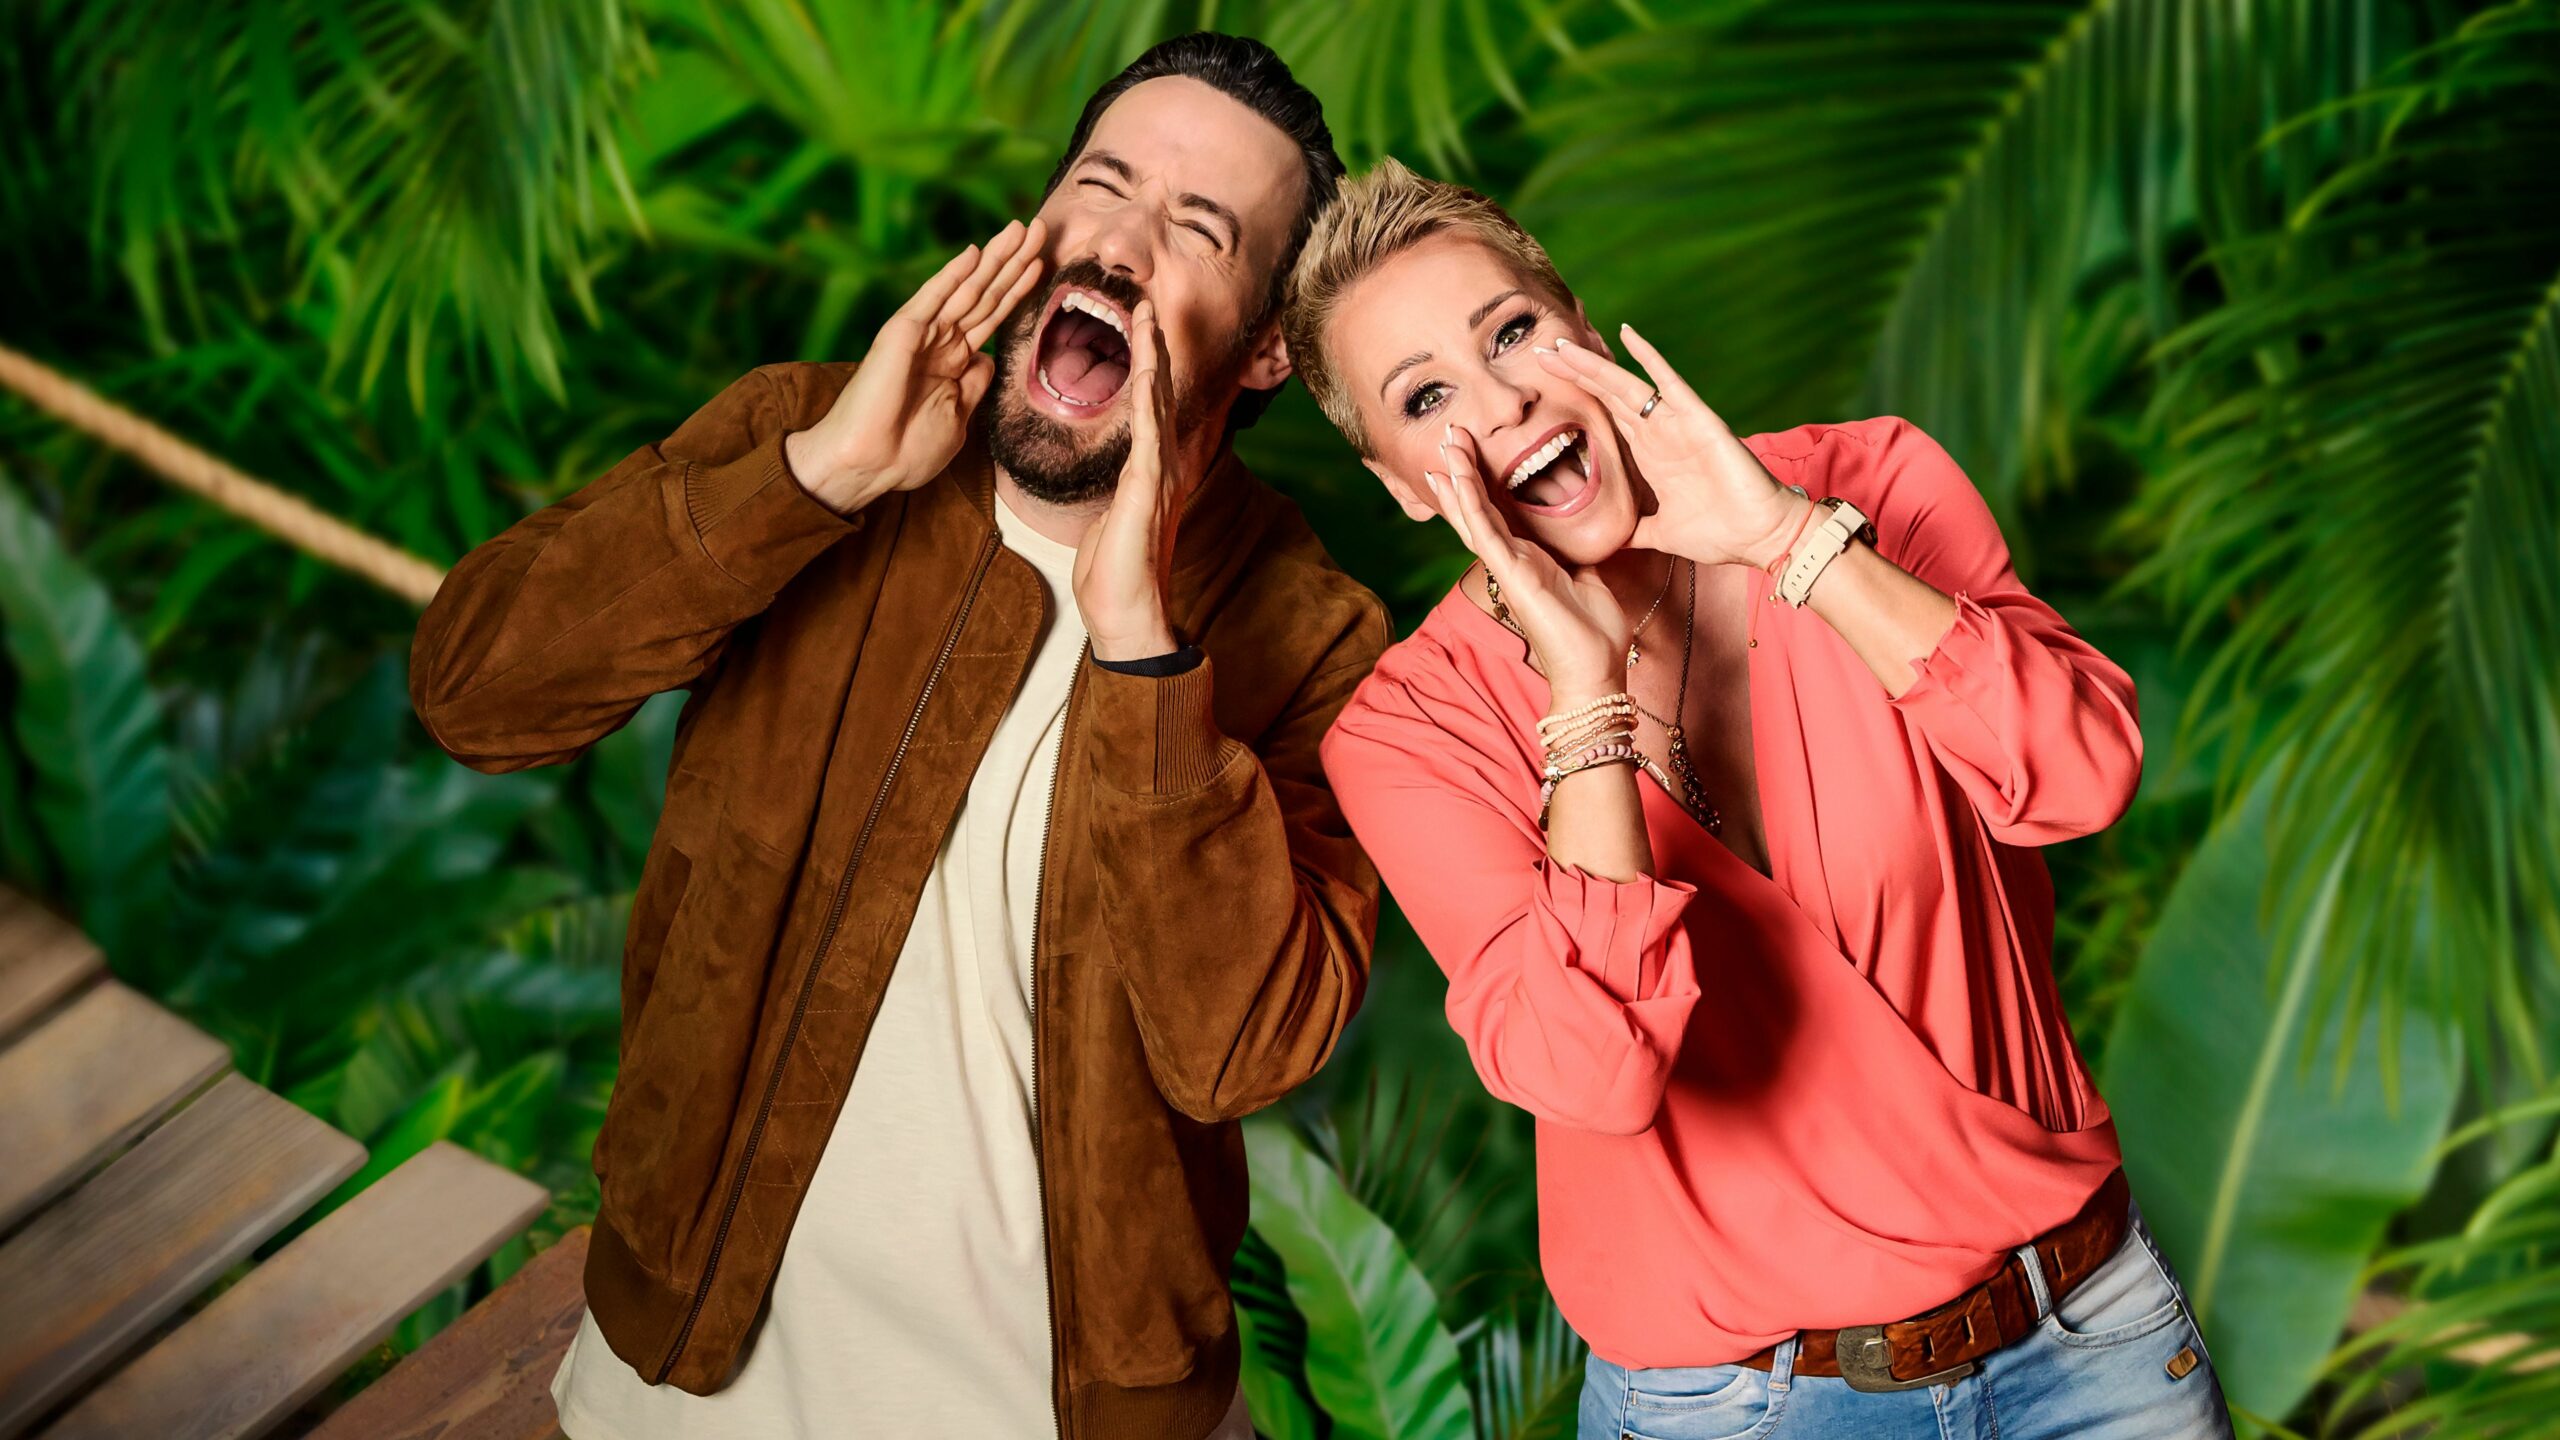 Die Moderatoren Jan Köppen und Sonja Zietlow vom RTL-Dschungelcamp „Ich bin ein Star – Holt mich hier raus!“ stehen in einer Dschungel-Kulisse.